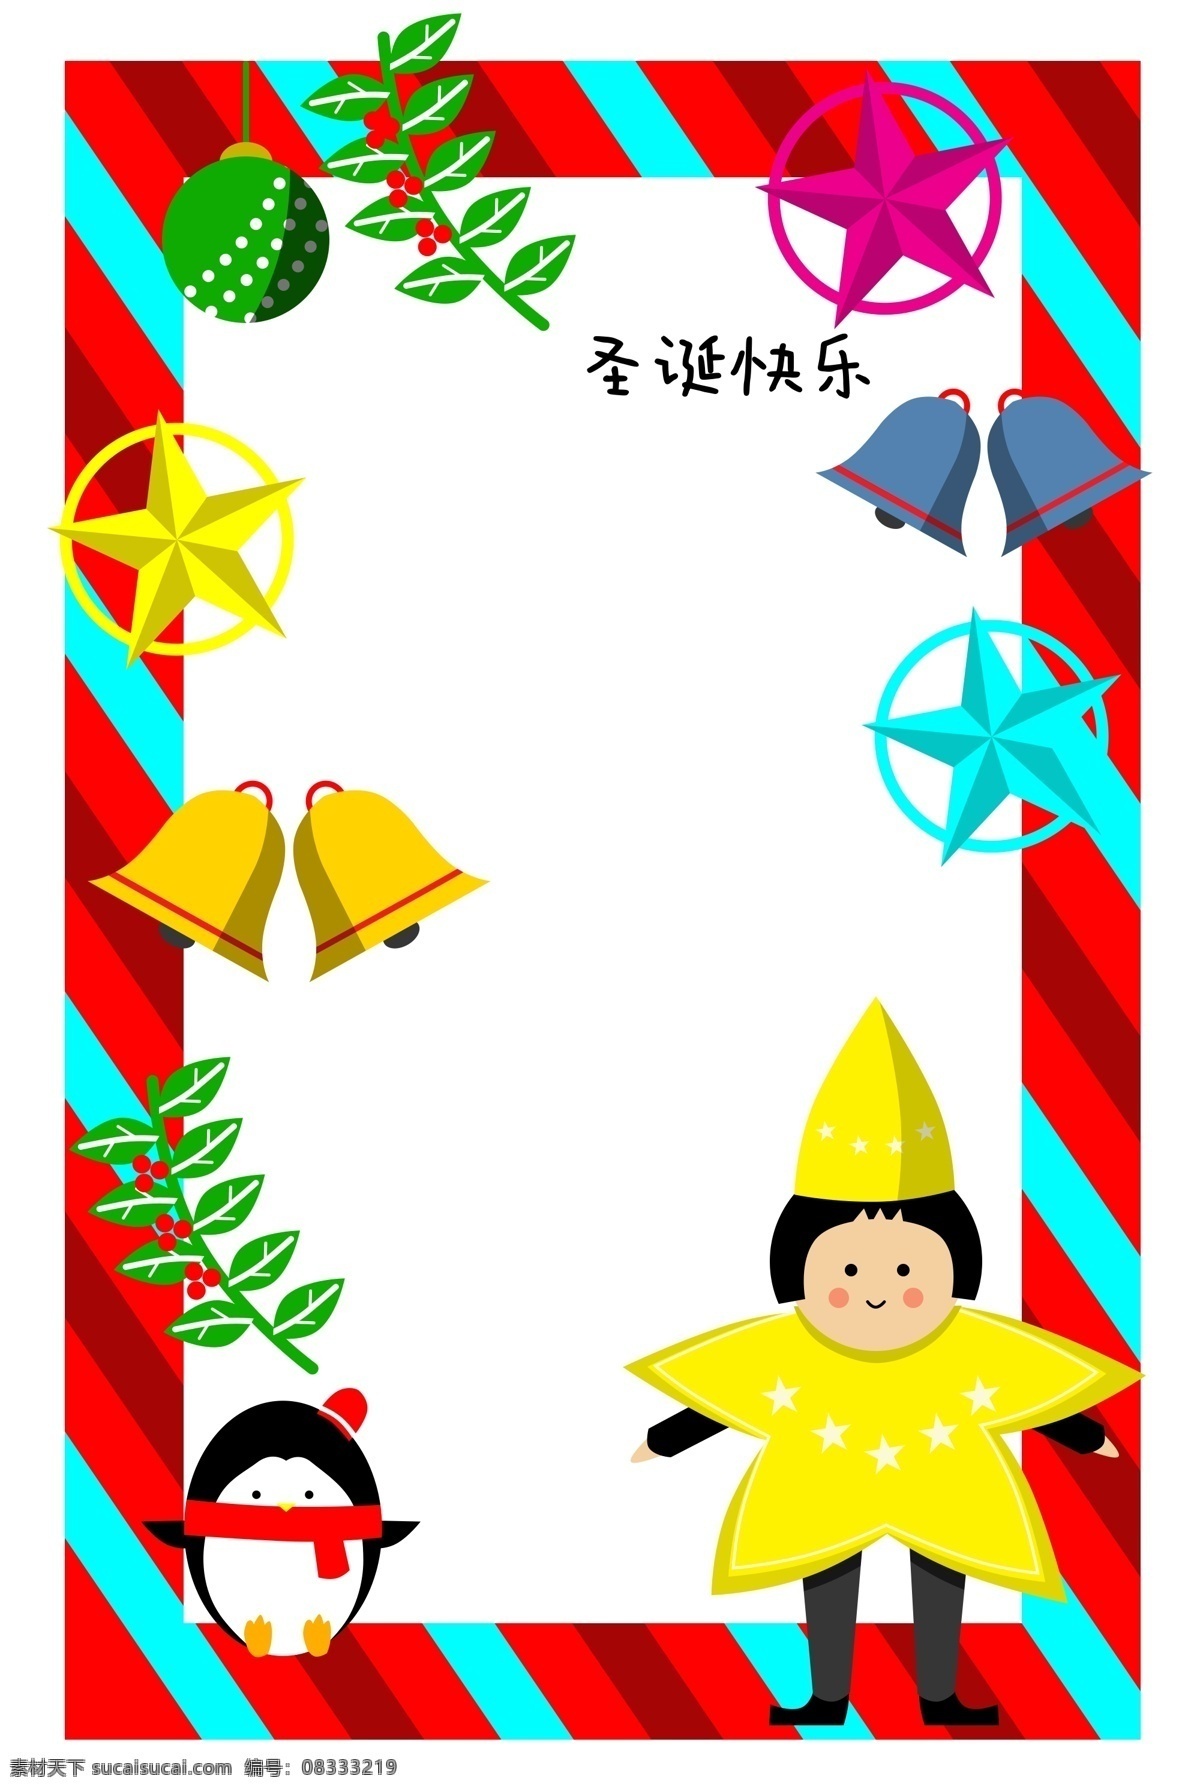 圣诞节 企鹅 人物 边框 插画 圣诞节边框 蓝色的五角星 黄色的铃铛 黑色的企鹅 卡通人物边框 红色的边框